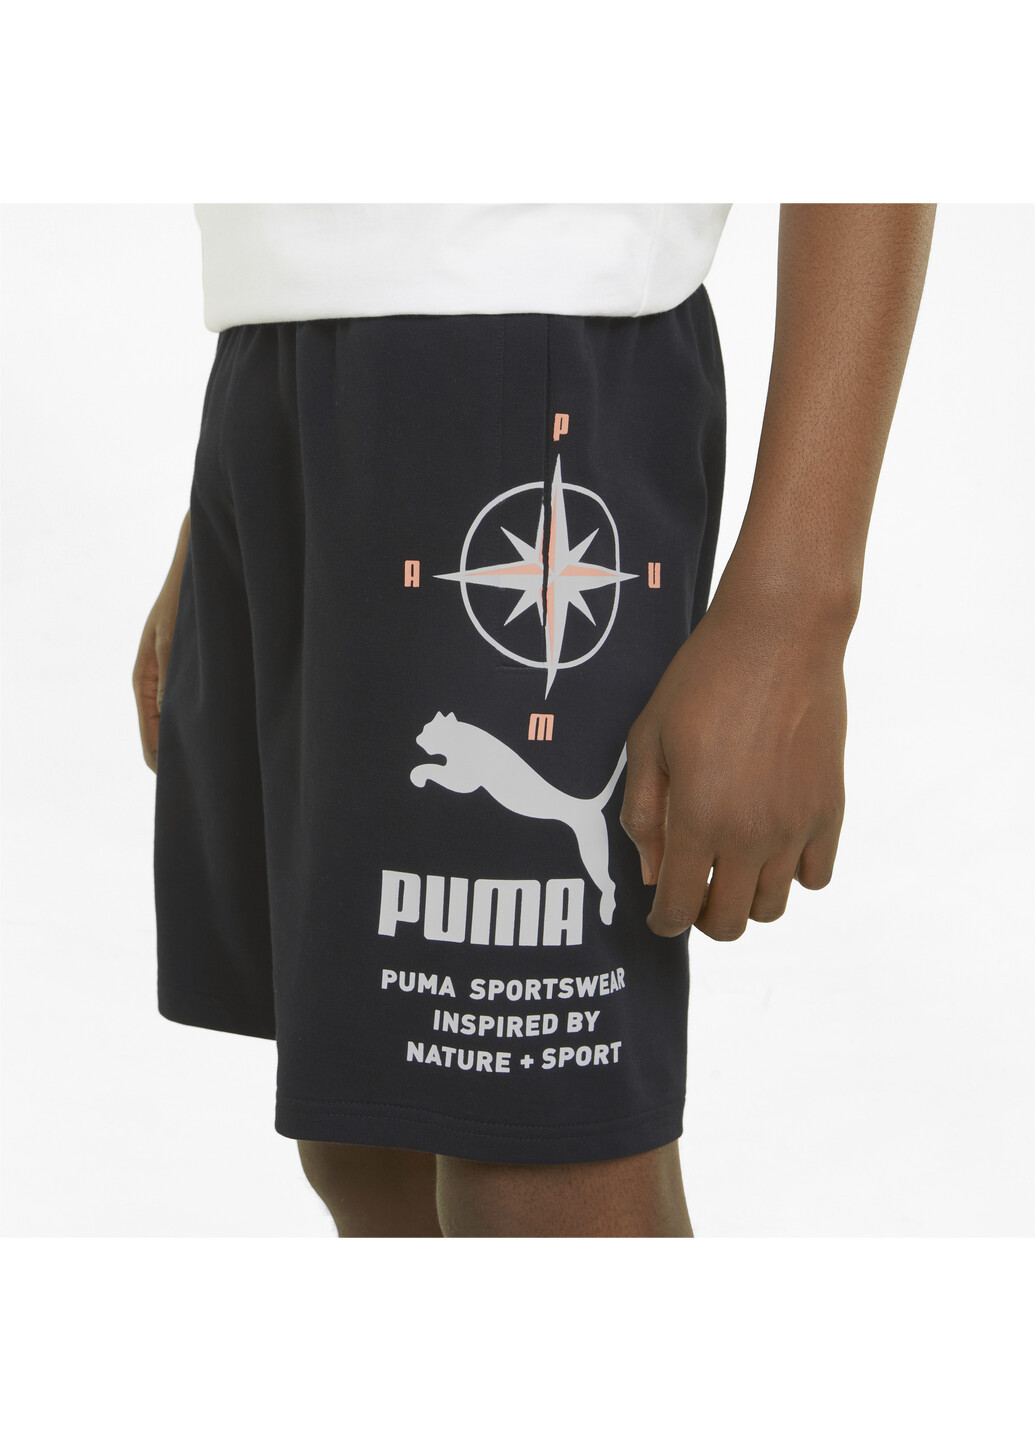 Шорты Nature Camp Graphic Men’s Shorts Puma однотонные чёрные спортивные хлопок, полиэстер